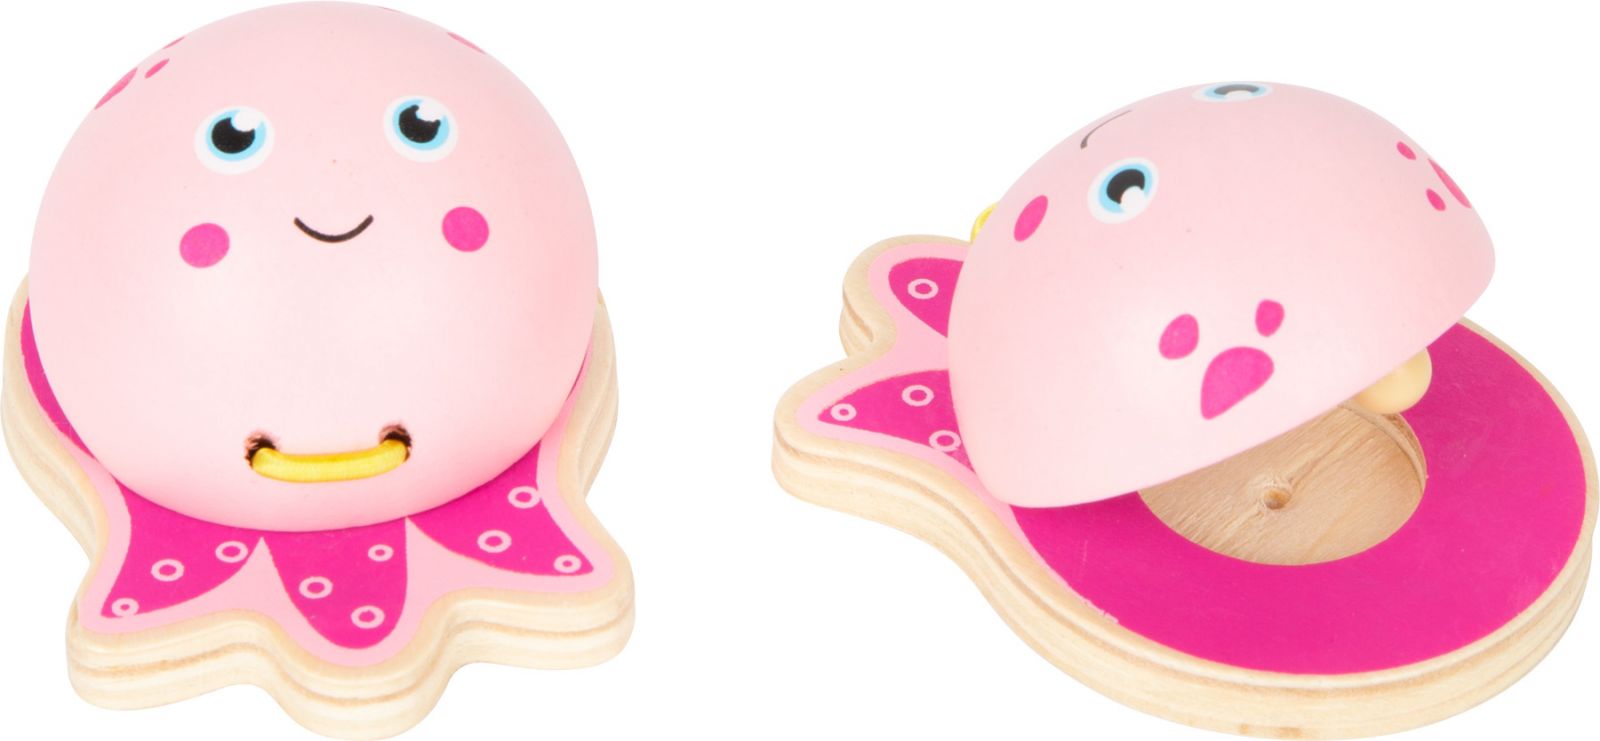 Dřevěné hračky Small foot Kastaněty mořští živočichové růžová medúza 1 ks Small foot by Legler